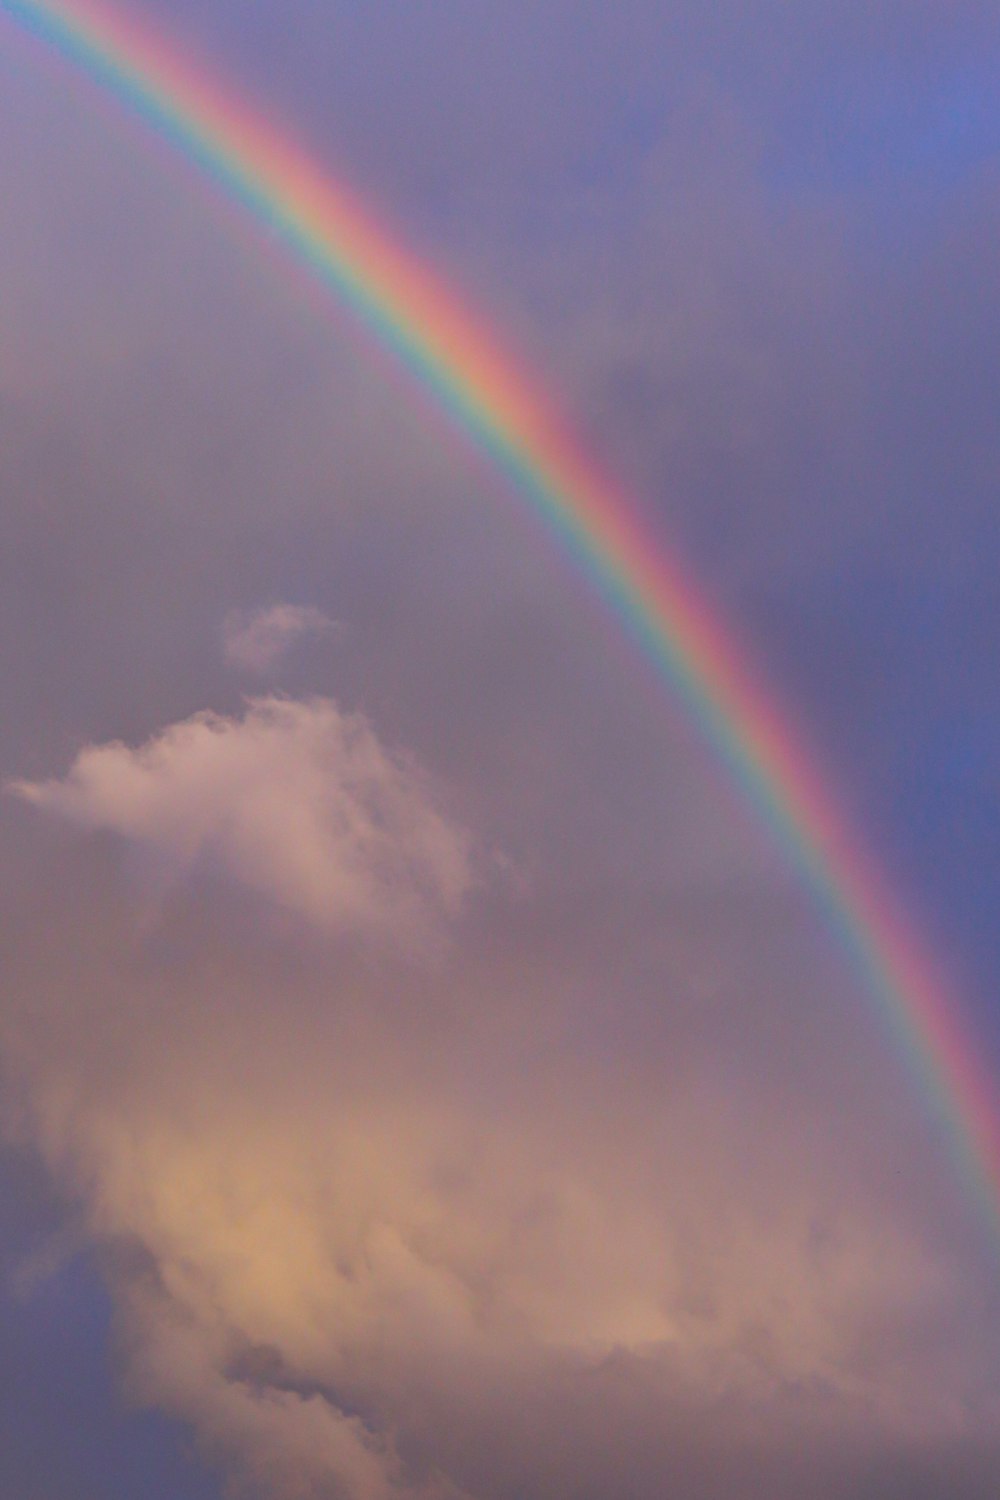 Ein doppelter Regenbogen an einem bewölkten Himmel